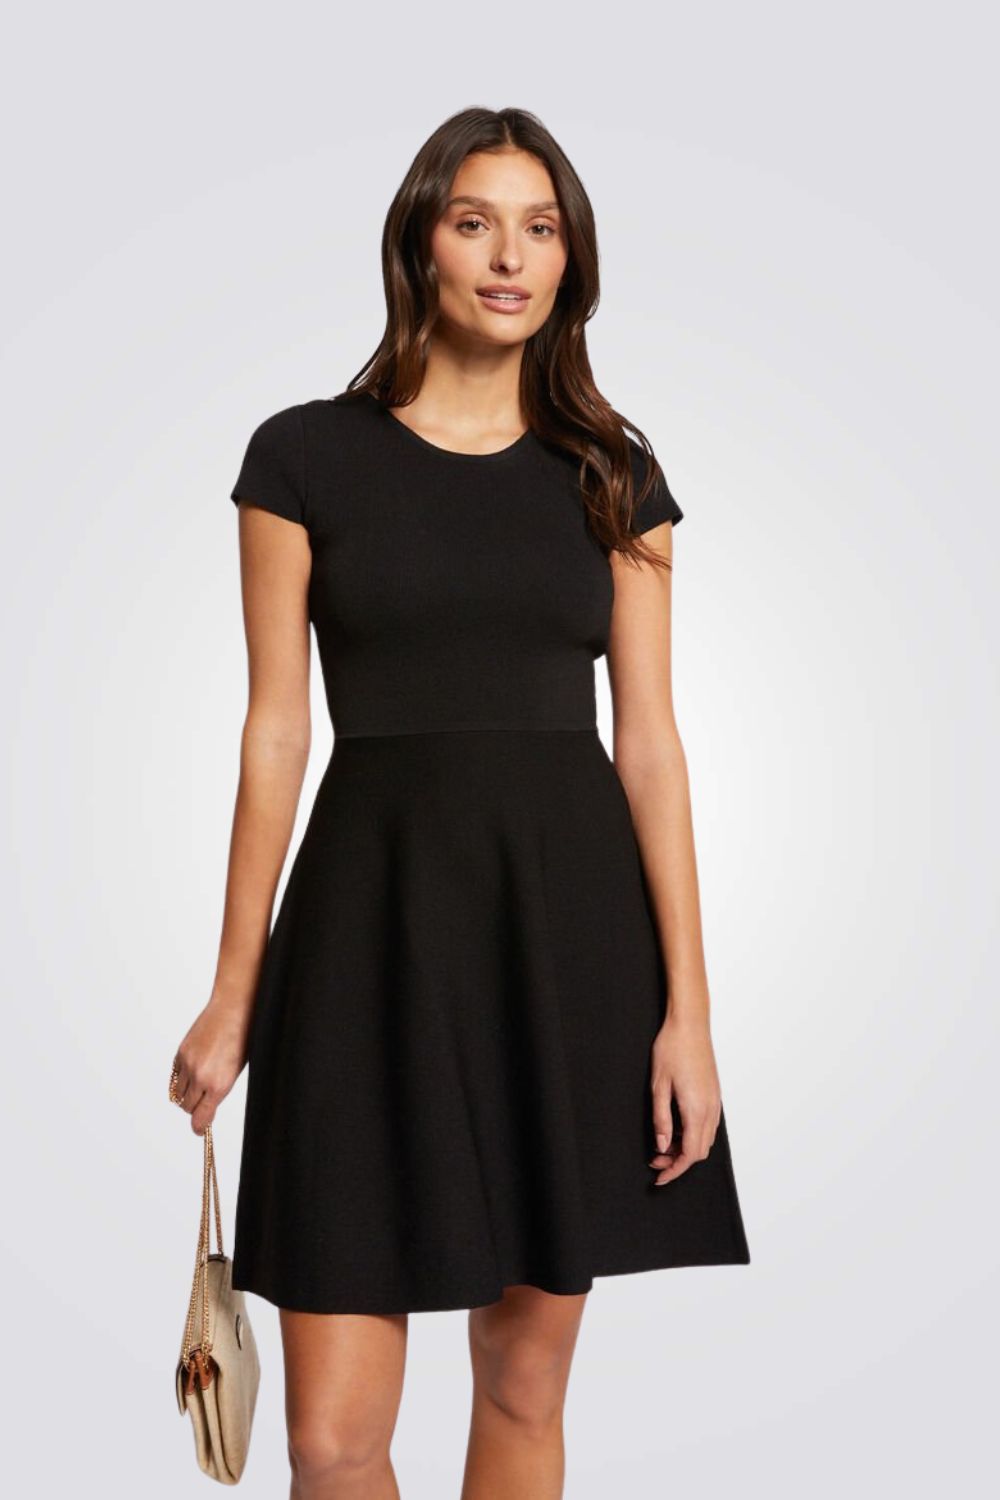 שמלה עם תחרה בצבע שחור